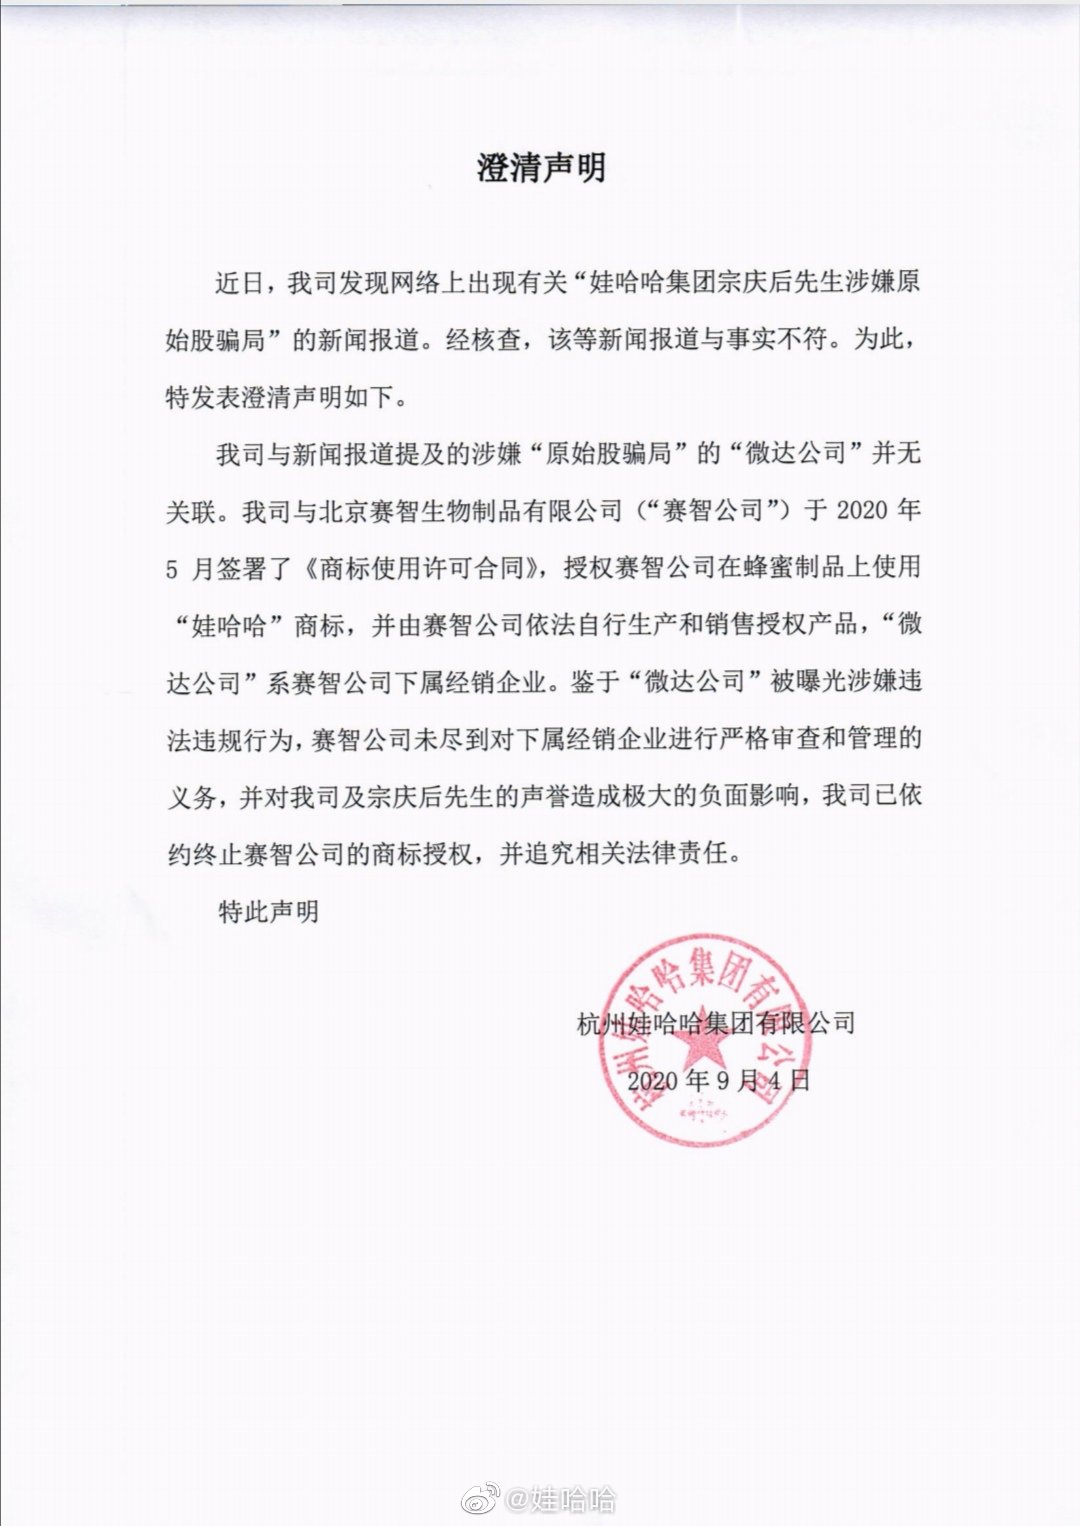 娃哈哈与北京赛智生物制品有限公司签署了《商标使用许可合同》,授权